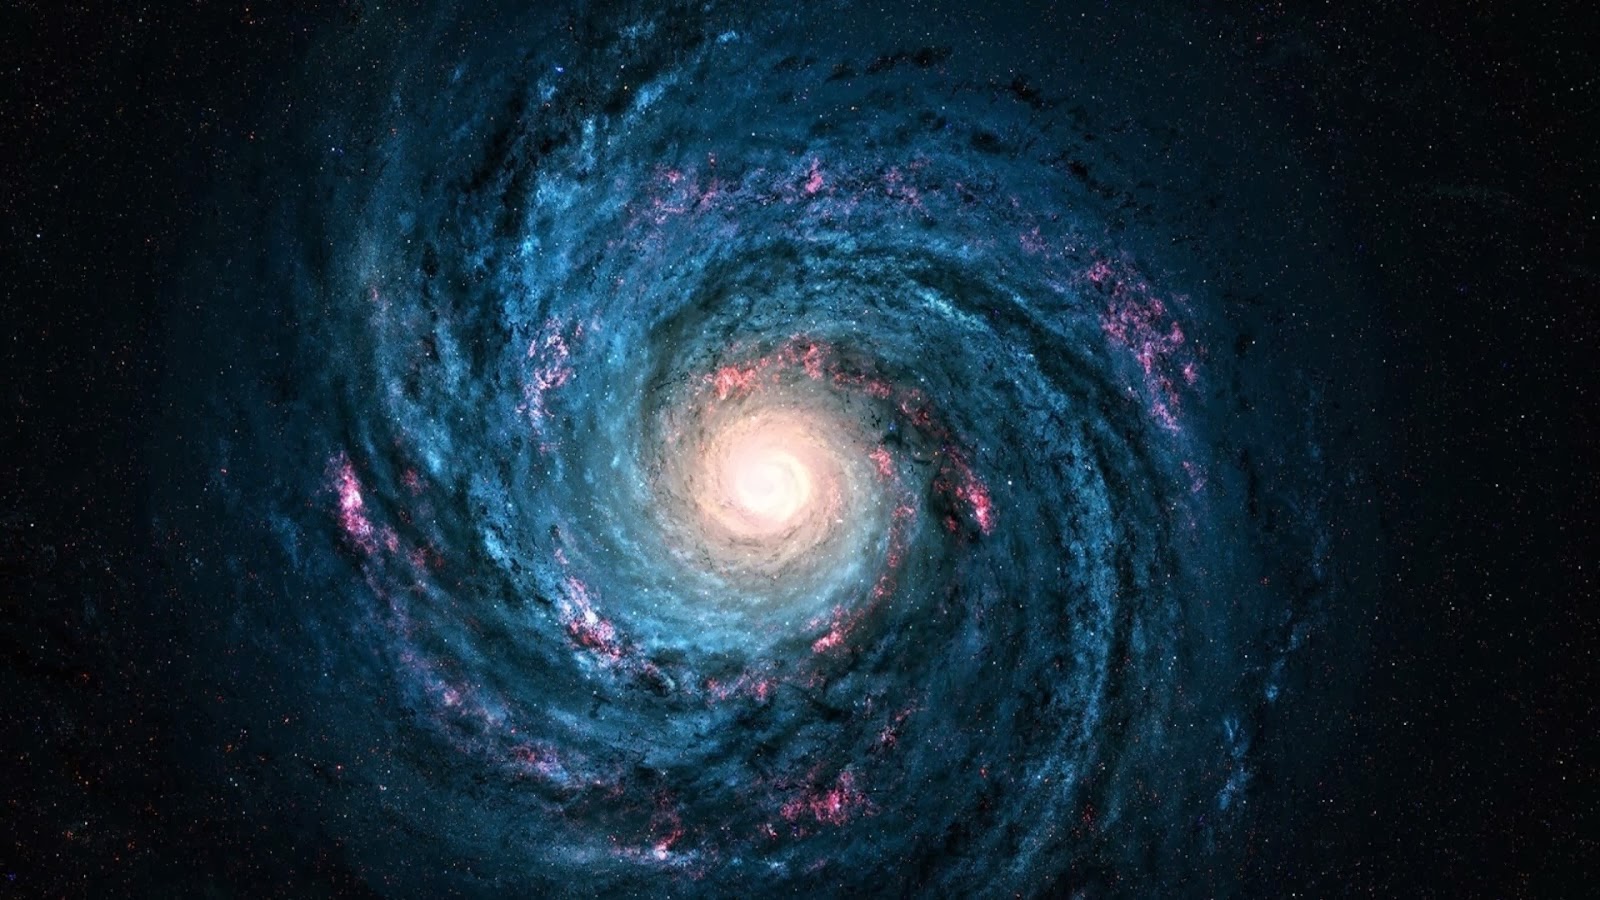 HD Wallpaper 1080p Space Milky Way Galaxy